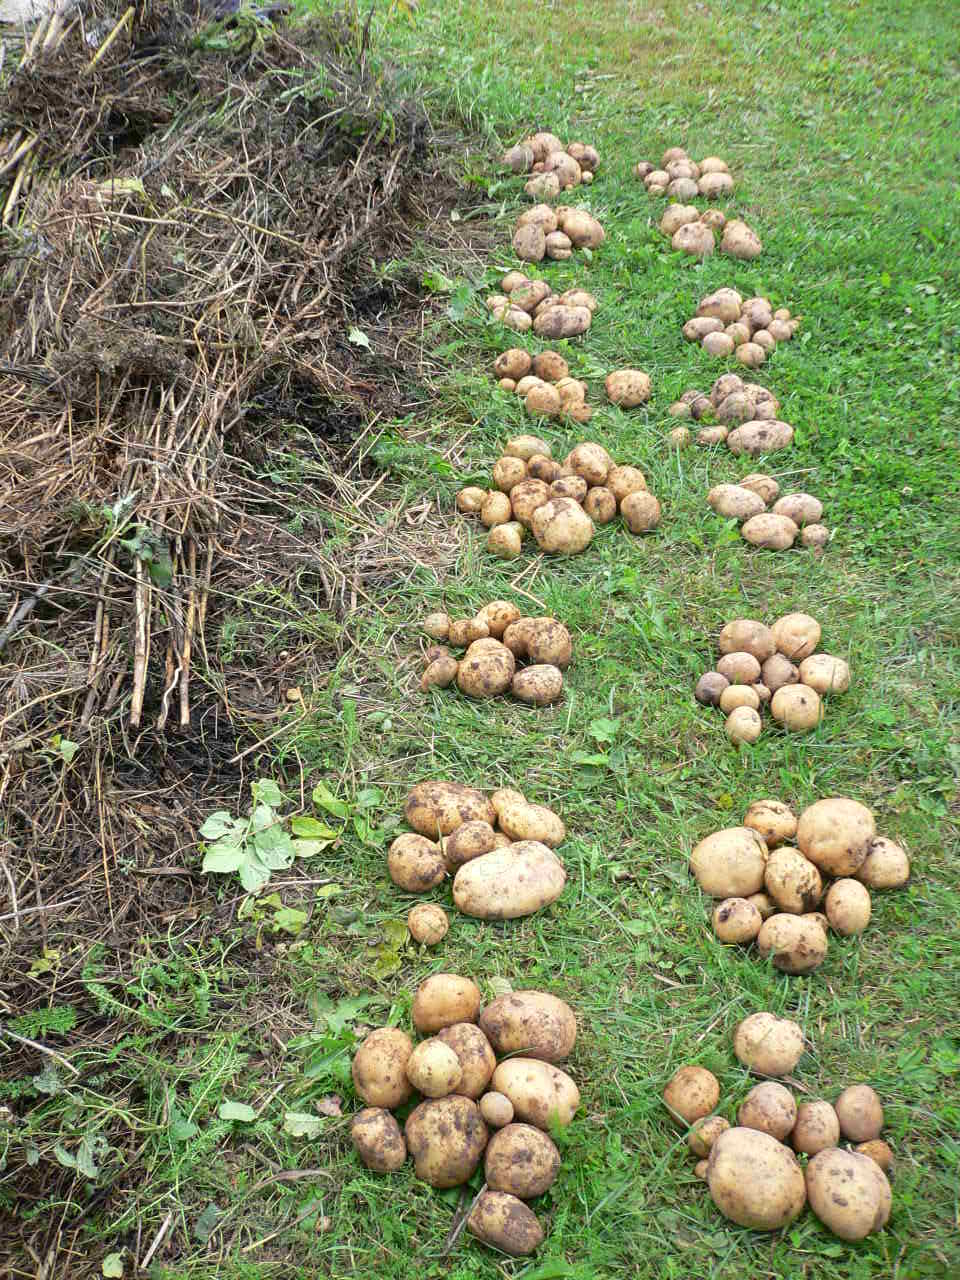 Выращивание картофеля под соломой, в том числе посадка, а также отзывы о полученных результатах